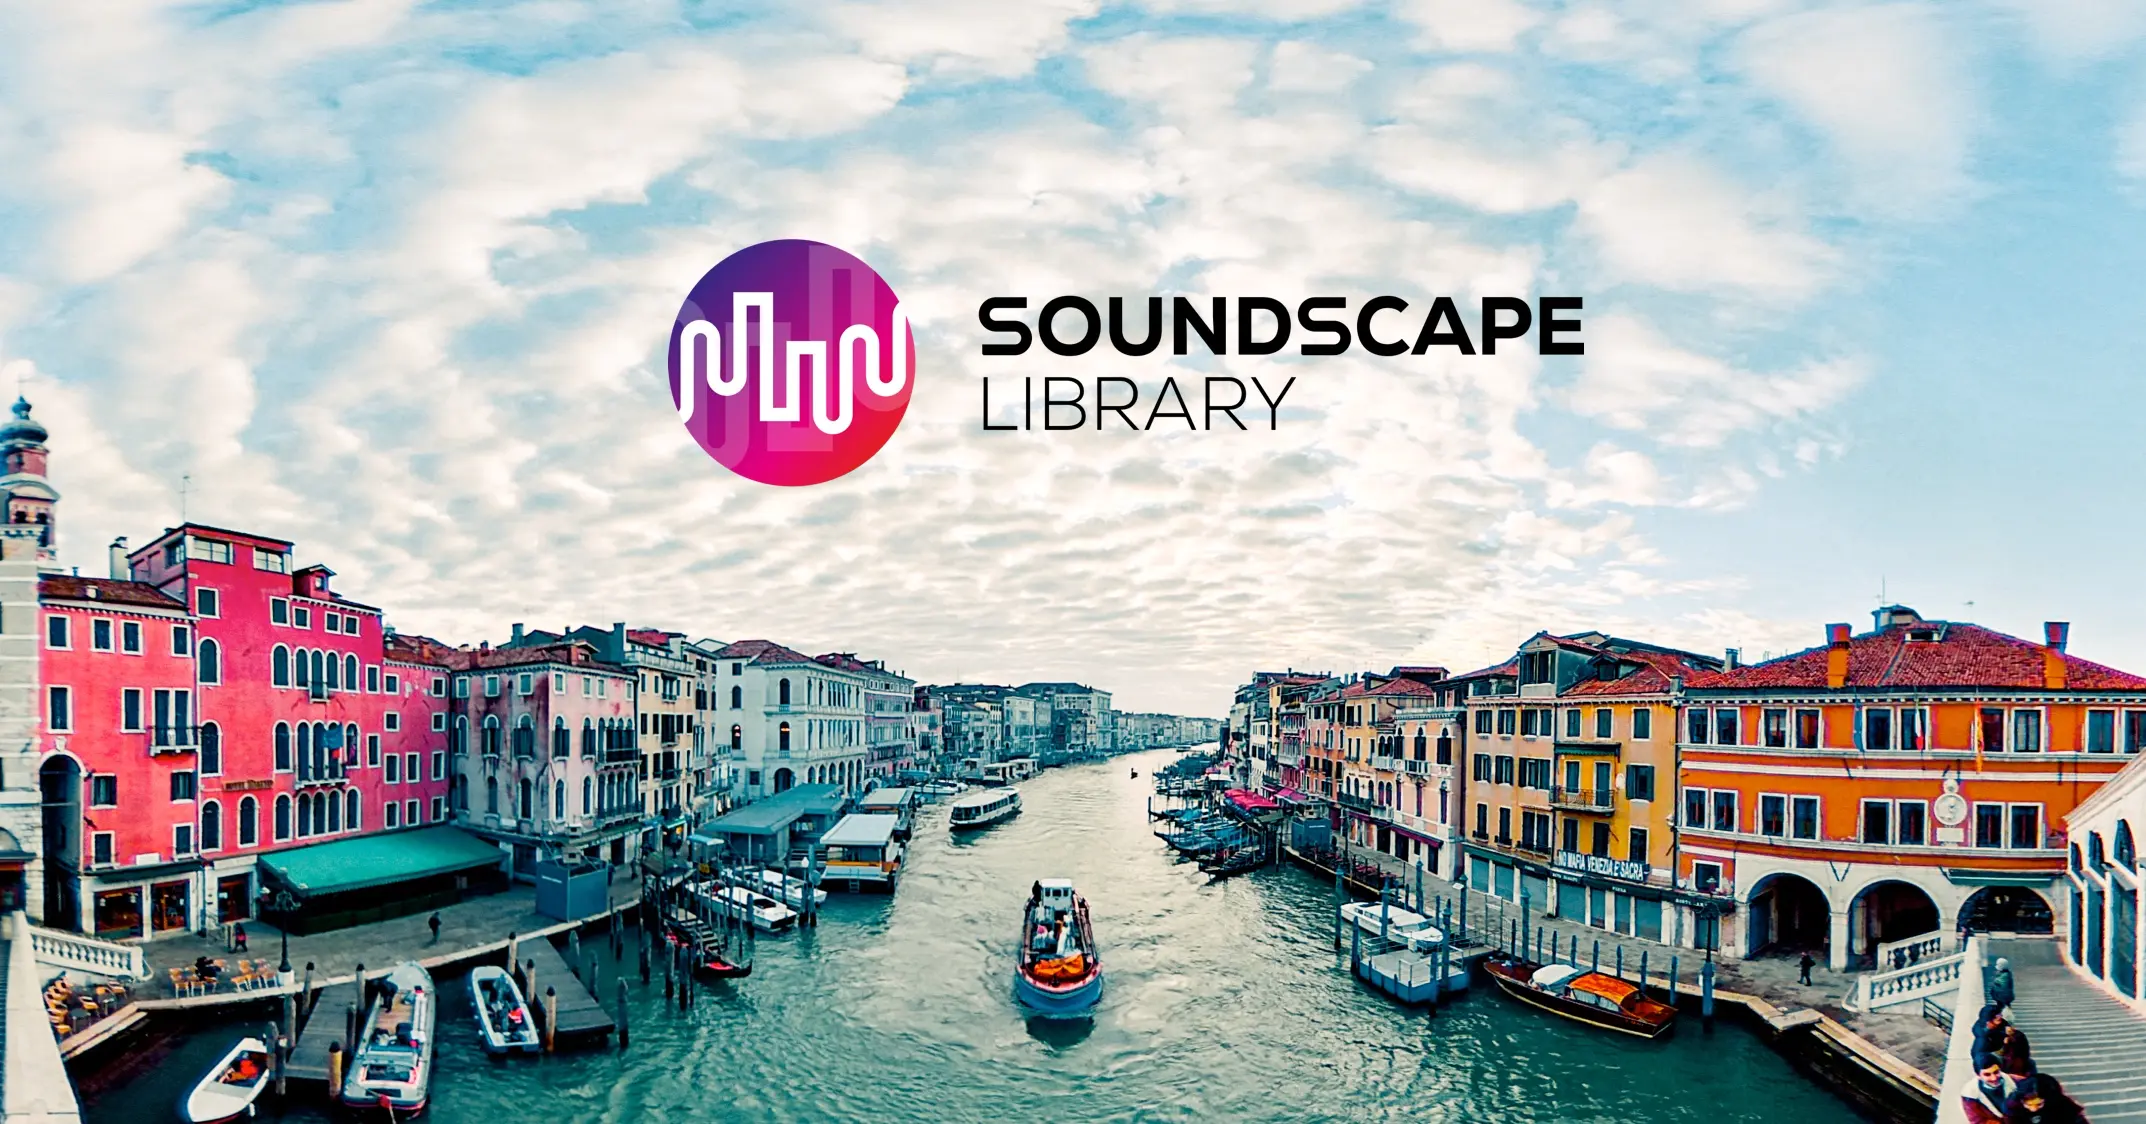 Soundscape Library